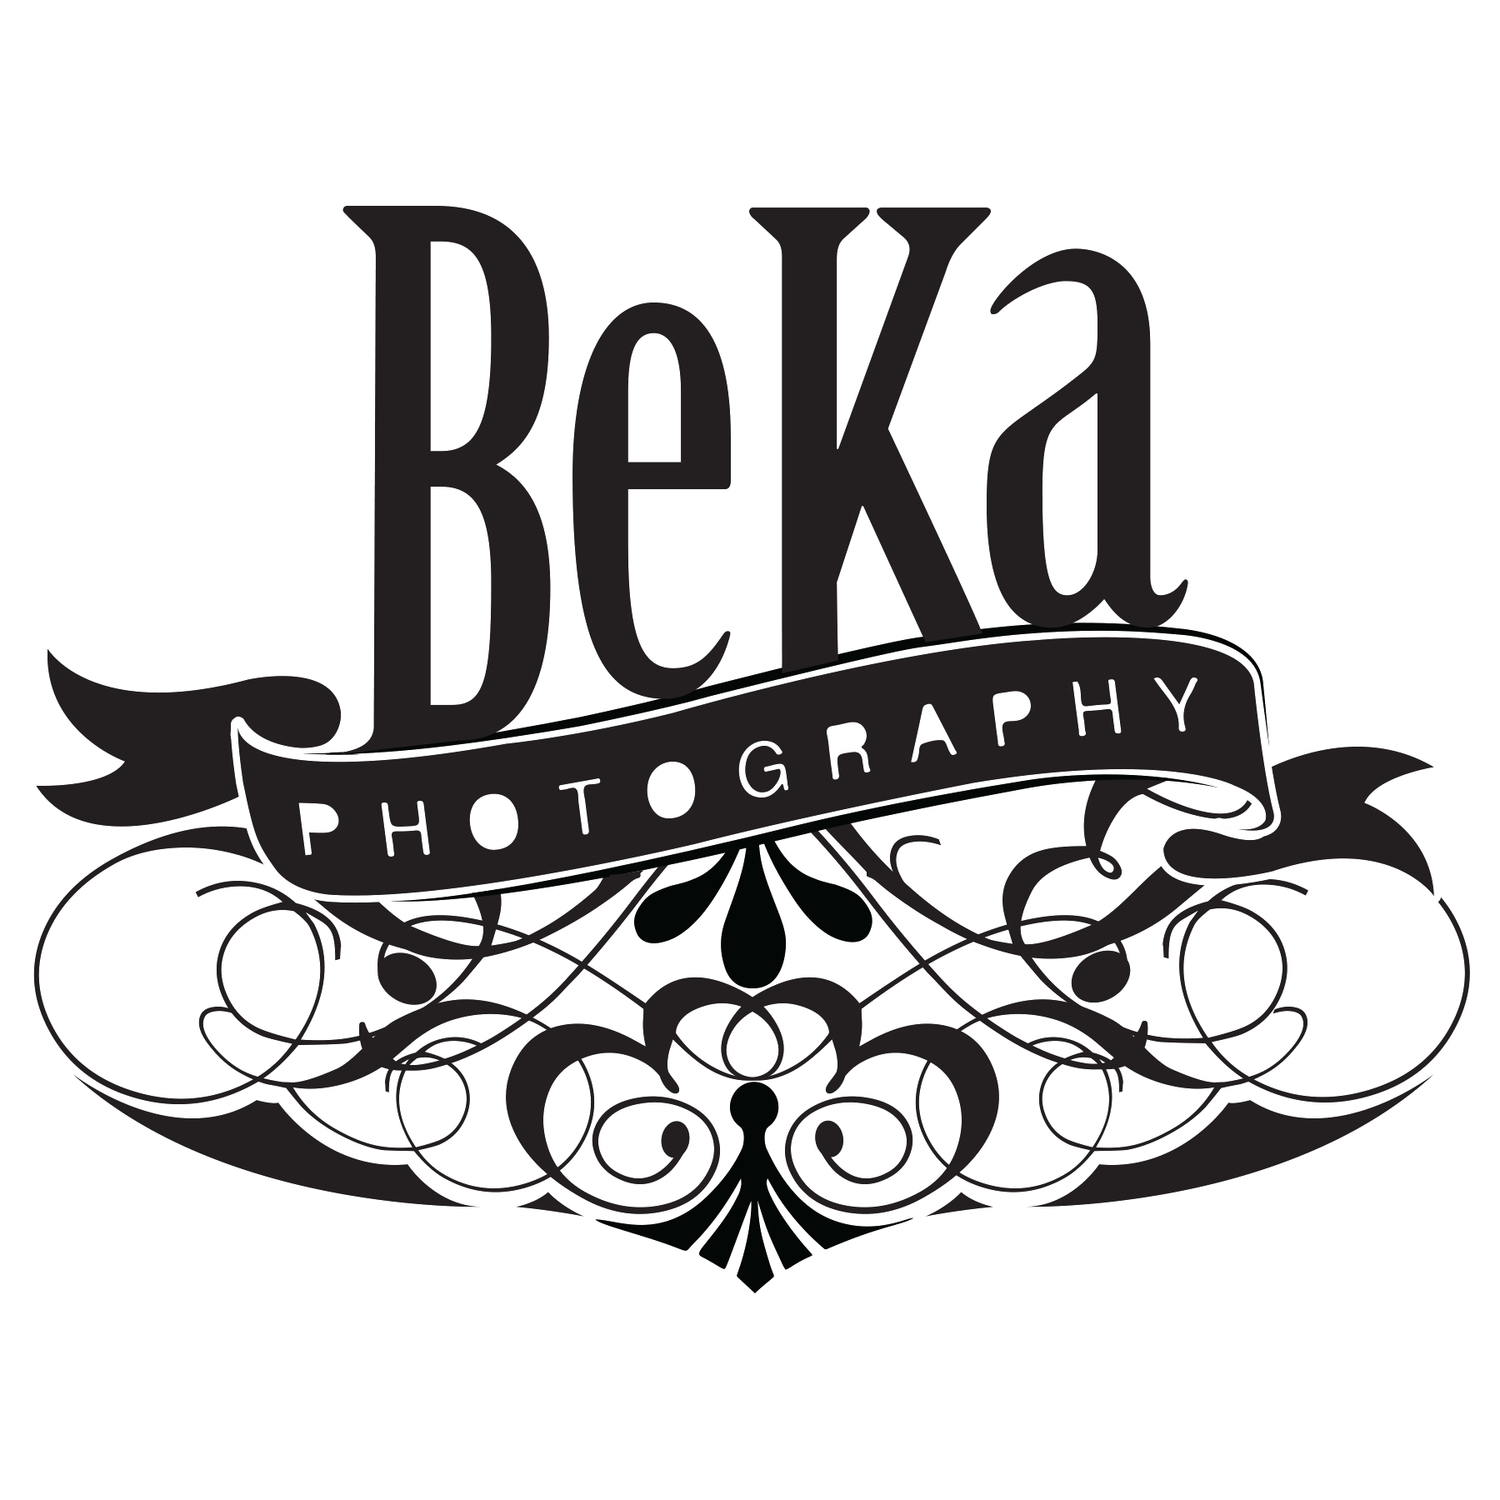 Photography BeKa